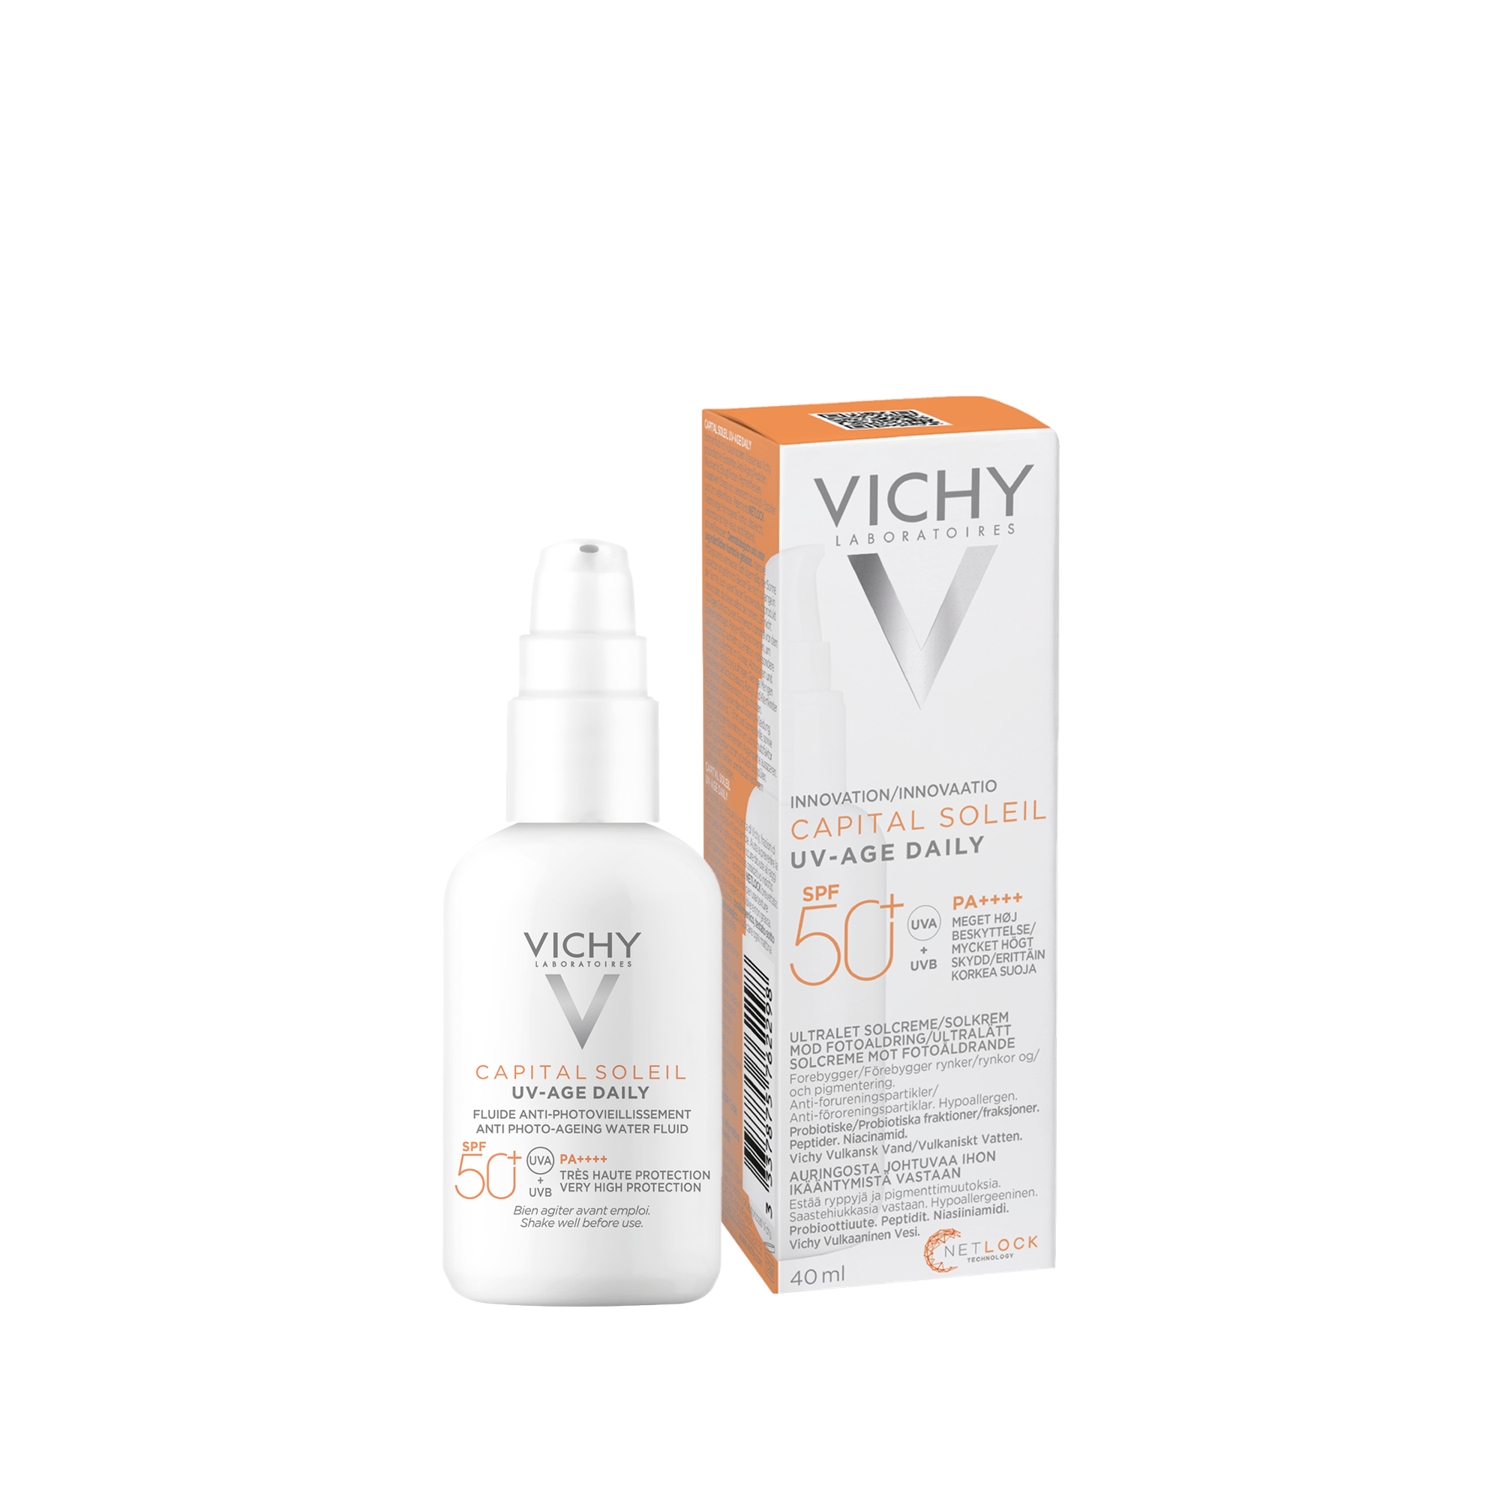 Vichy Capital Soleil UV-age Daily spf50+ купить. Vichy uv age